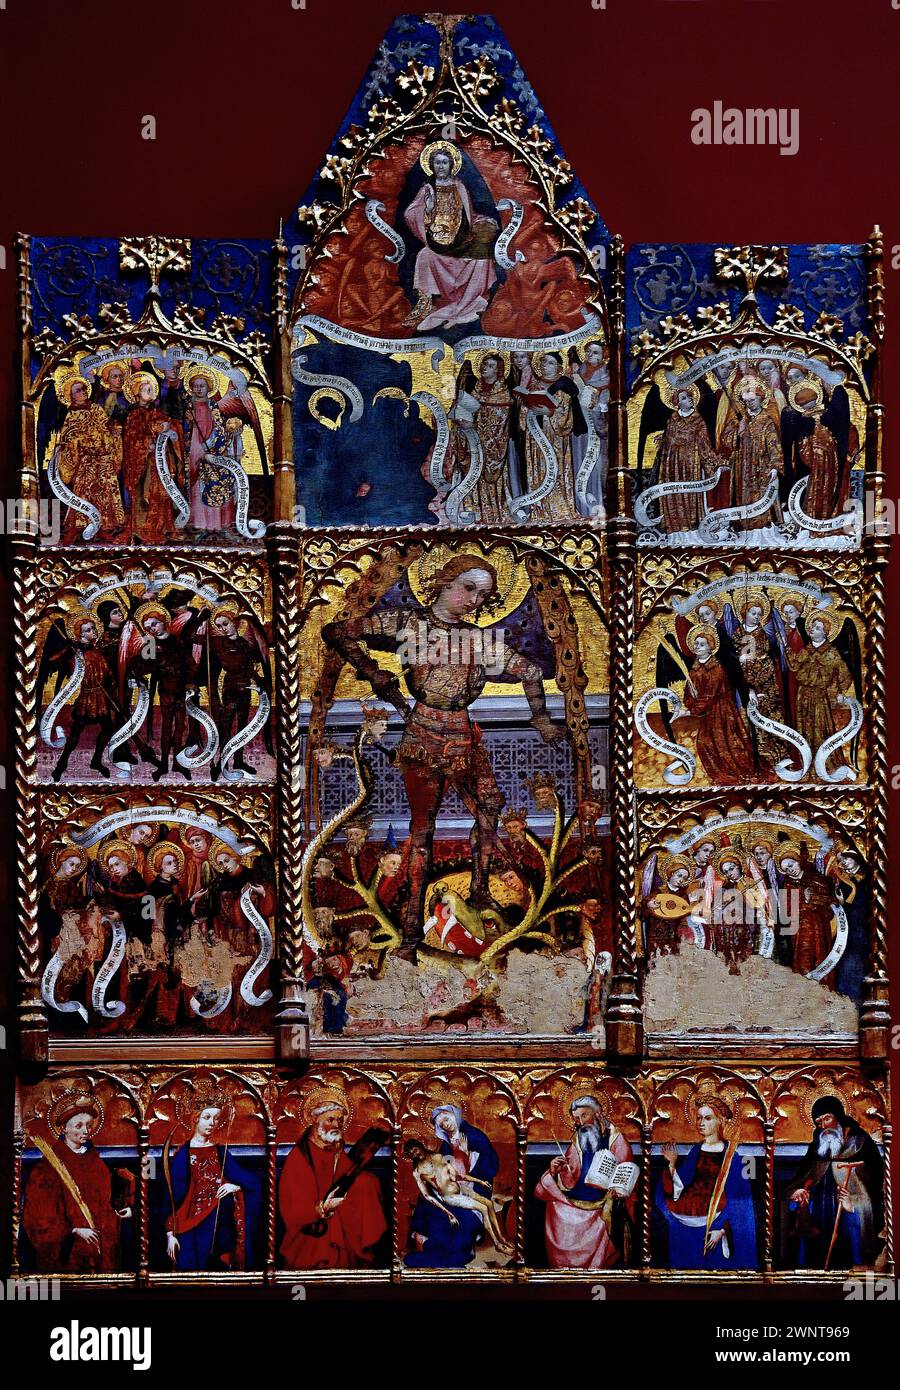 Erzengel Michael, umgeben von Chören der Engel von Lluc Borrassa 15. Jahrhundert 1. Hälfte Königliches Museum der Schönen Künste, Antwerpen, Belgien, Belgien. Stockfoto